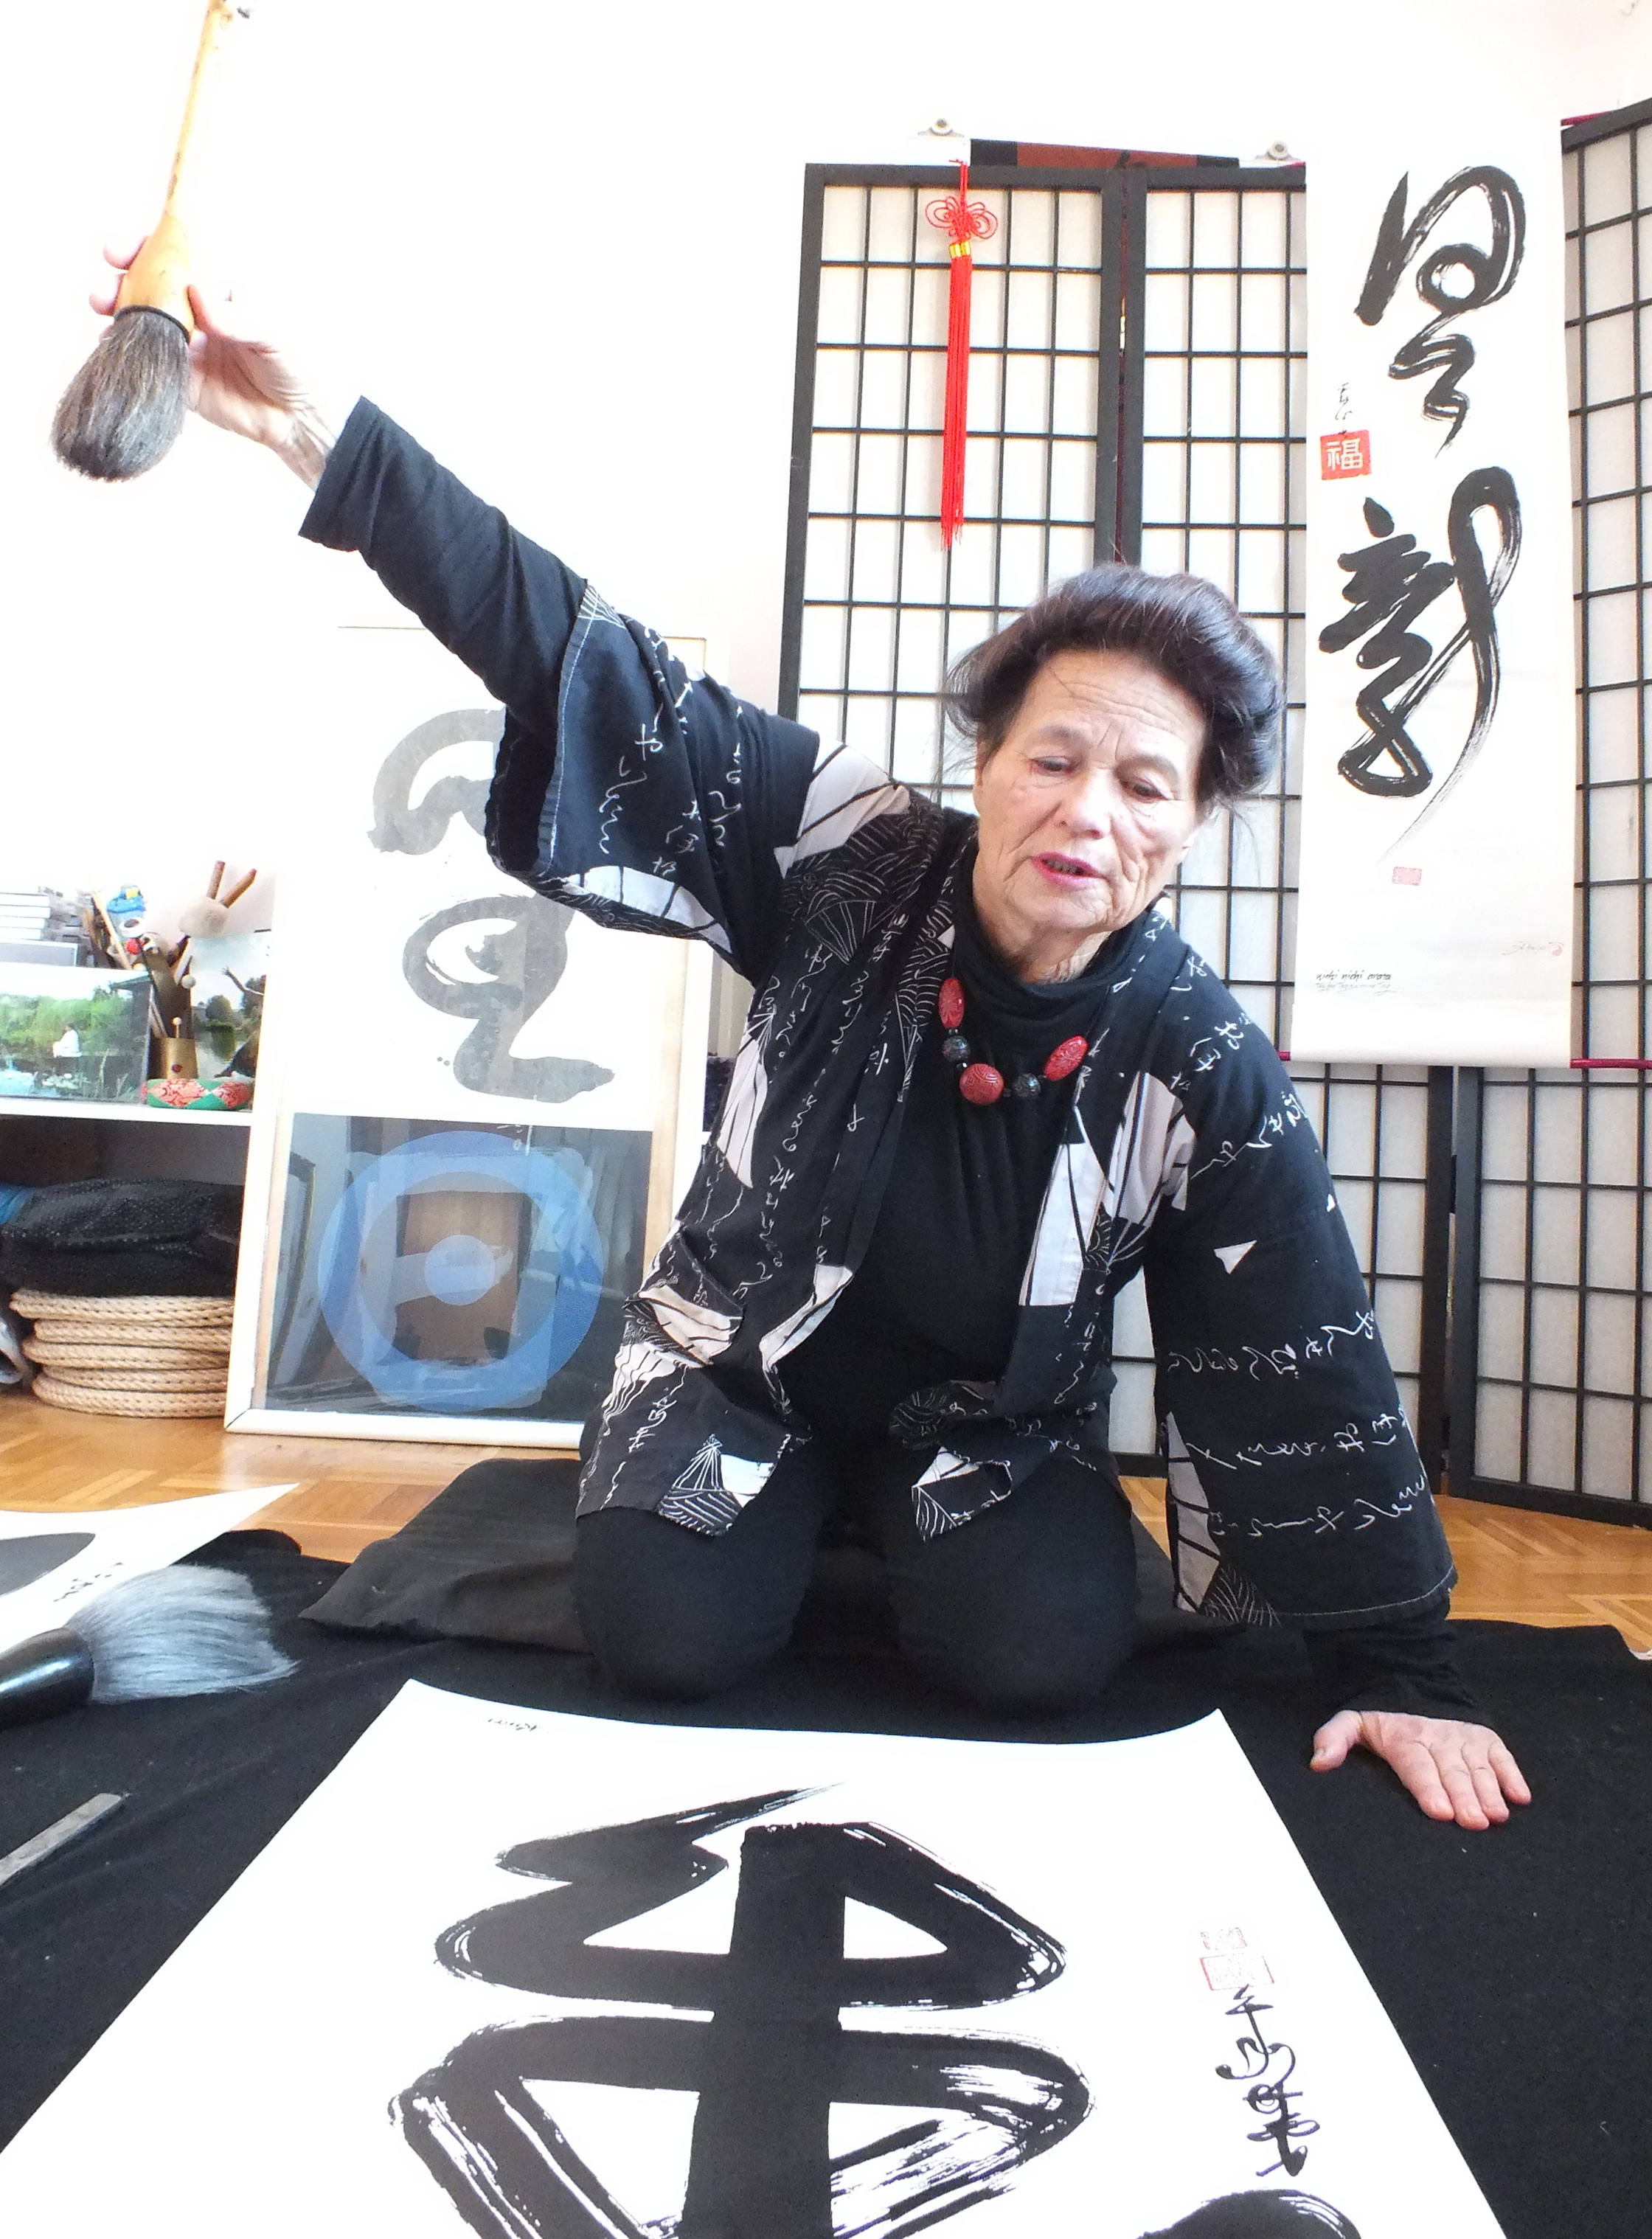 Eine Frau malt mit einem dicken Pinsel asiatische Schriftzeichen